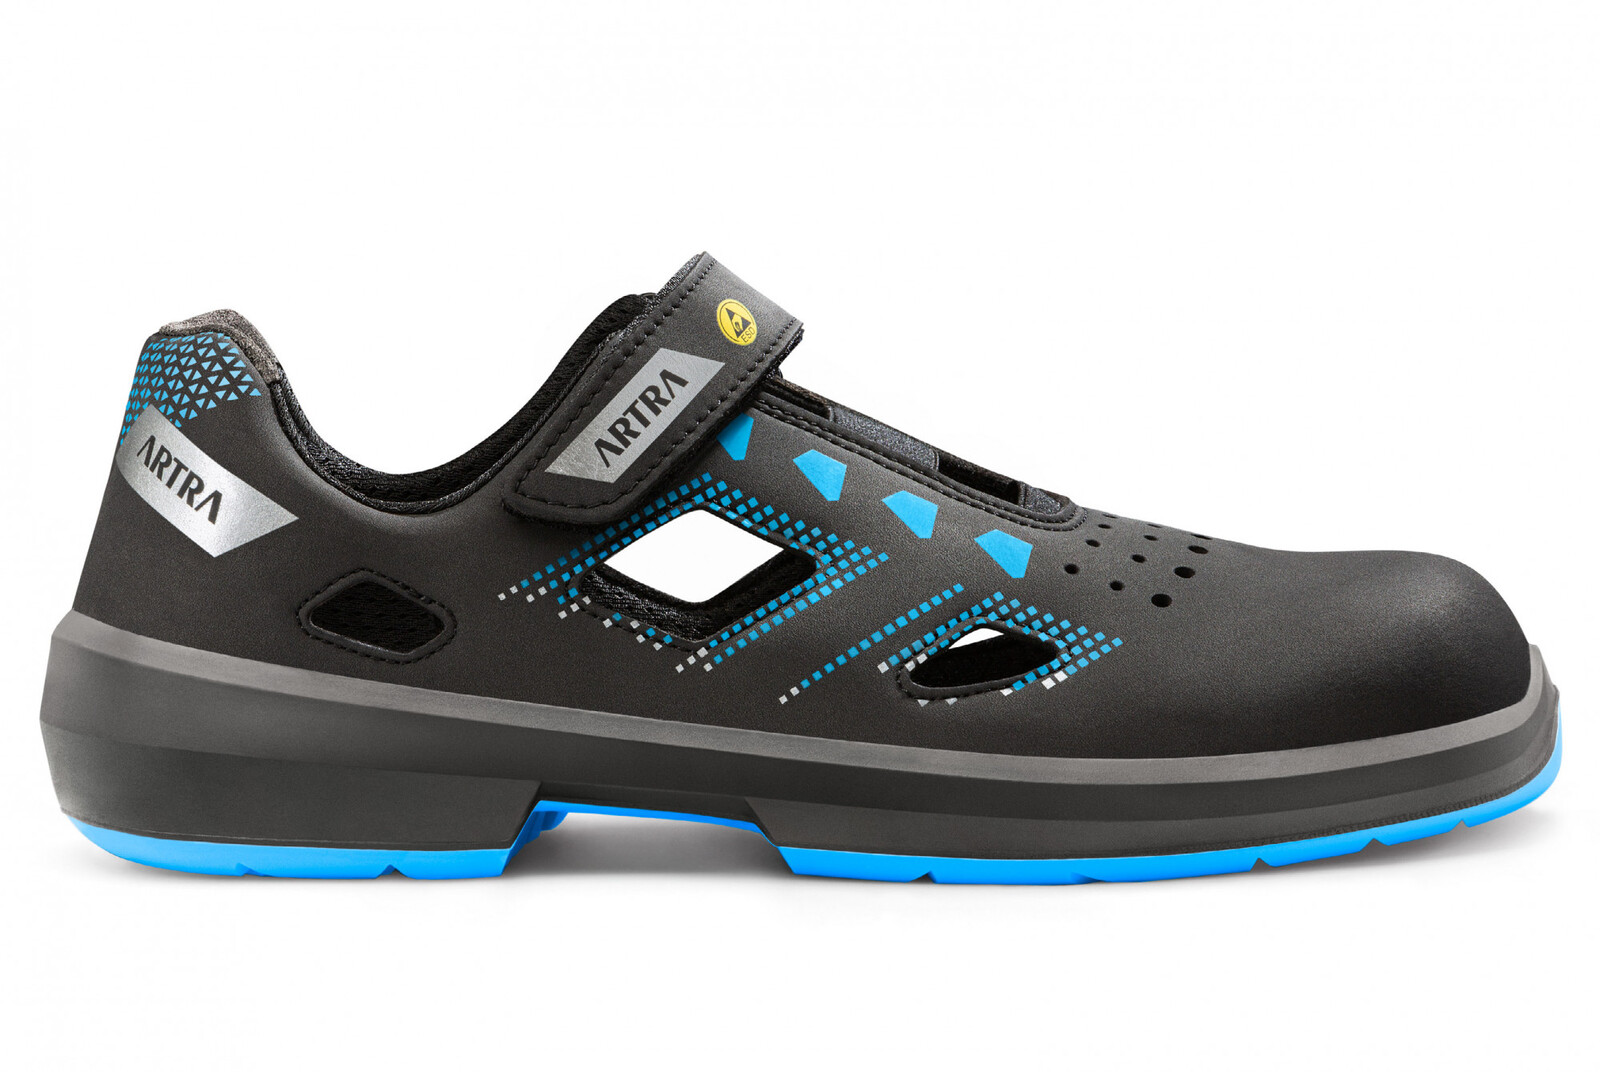 Bezpečnostné sandále Artra Arzo 805 619090 S1P SRC ESD MF - veľkosť: 37, farba: čierna/modrá